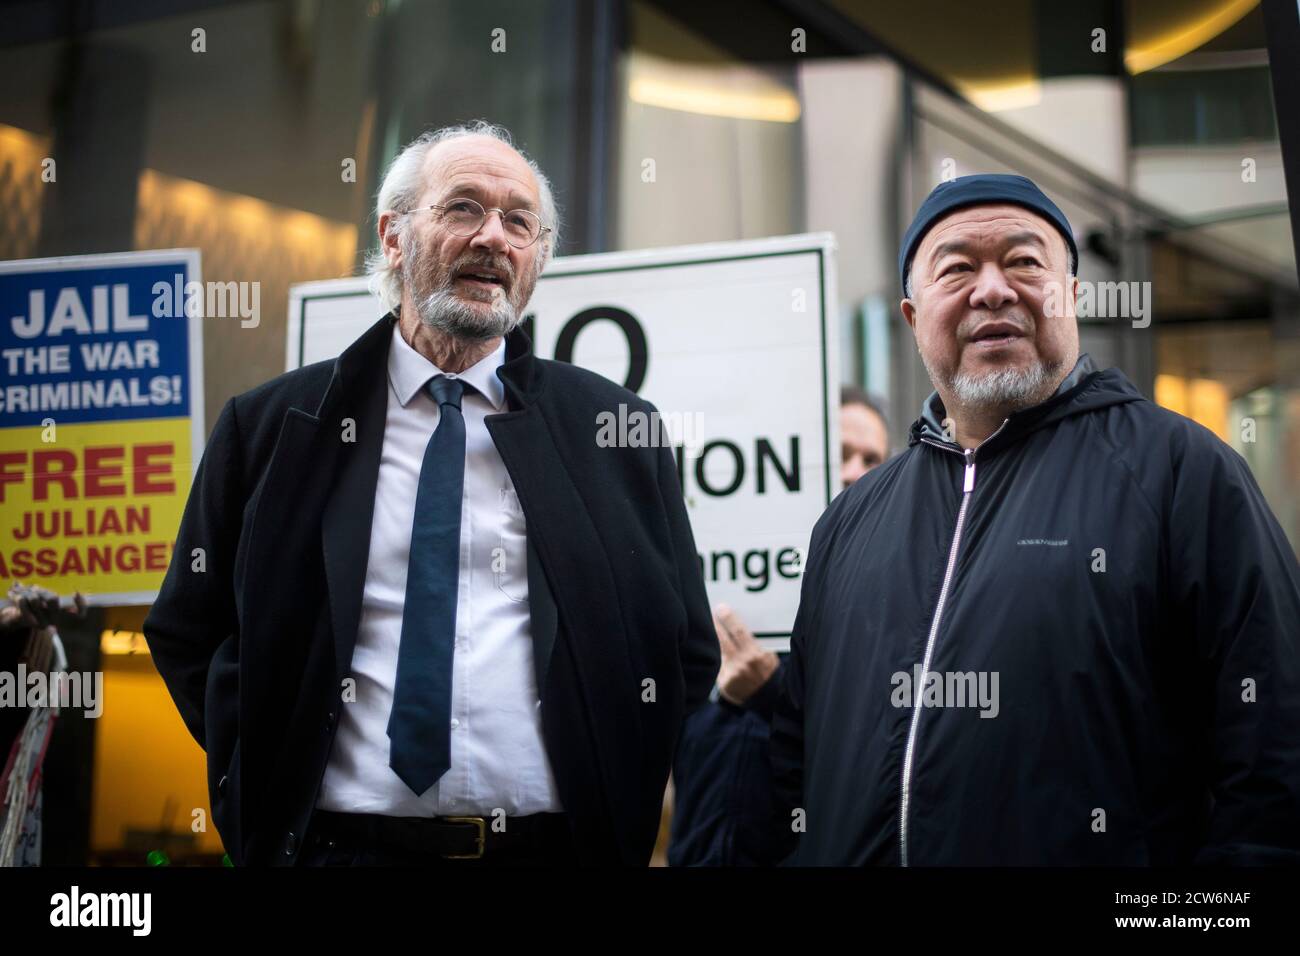 John Shipton, padre di Julian Assange, con l'artista e attivista cinese contemporaneo ai Weiwei dopo una protesta silenziosa fuori dall'Old Bailey di Londra a sostegno di Julian Assange. Il fondatore di WikiLeaks sta combattendo l'estradizione negli Stati Uniti su accuse relative a fughe di documenti classificati che presumibilmente espongono crimini di guerra e abusi. Foto Stock